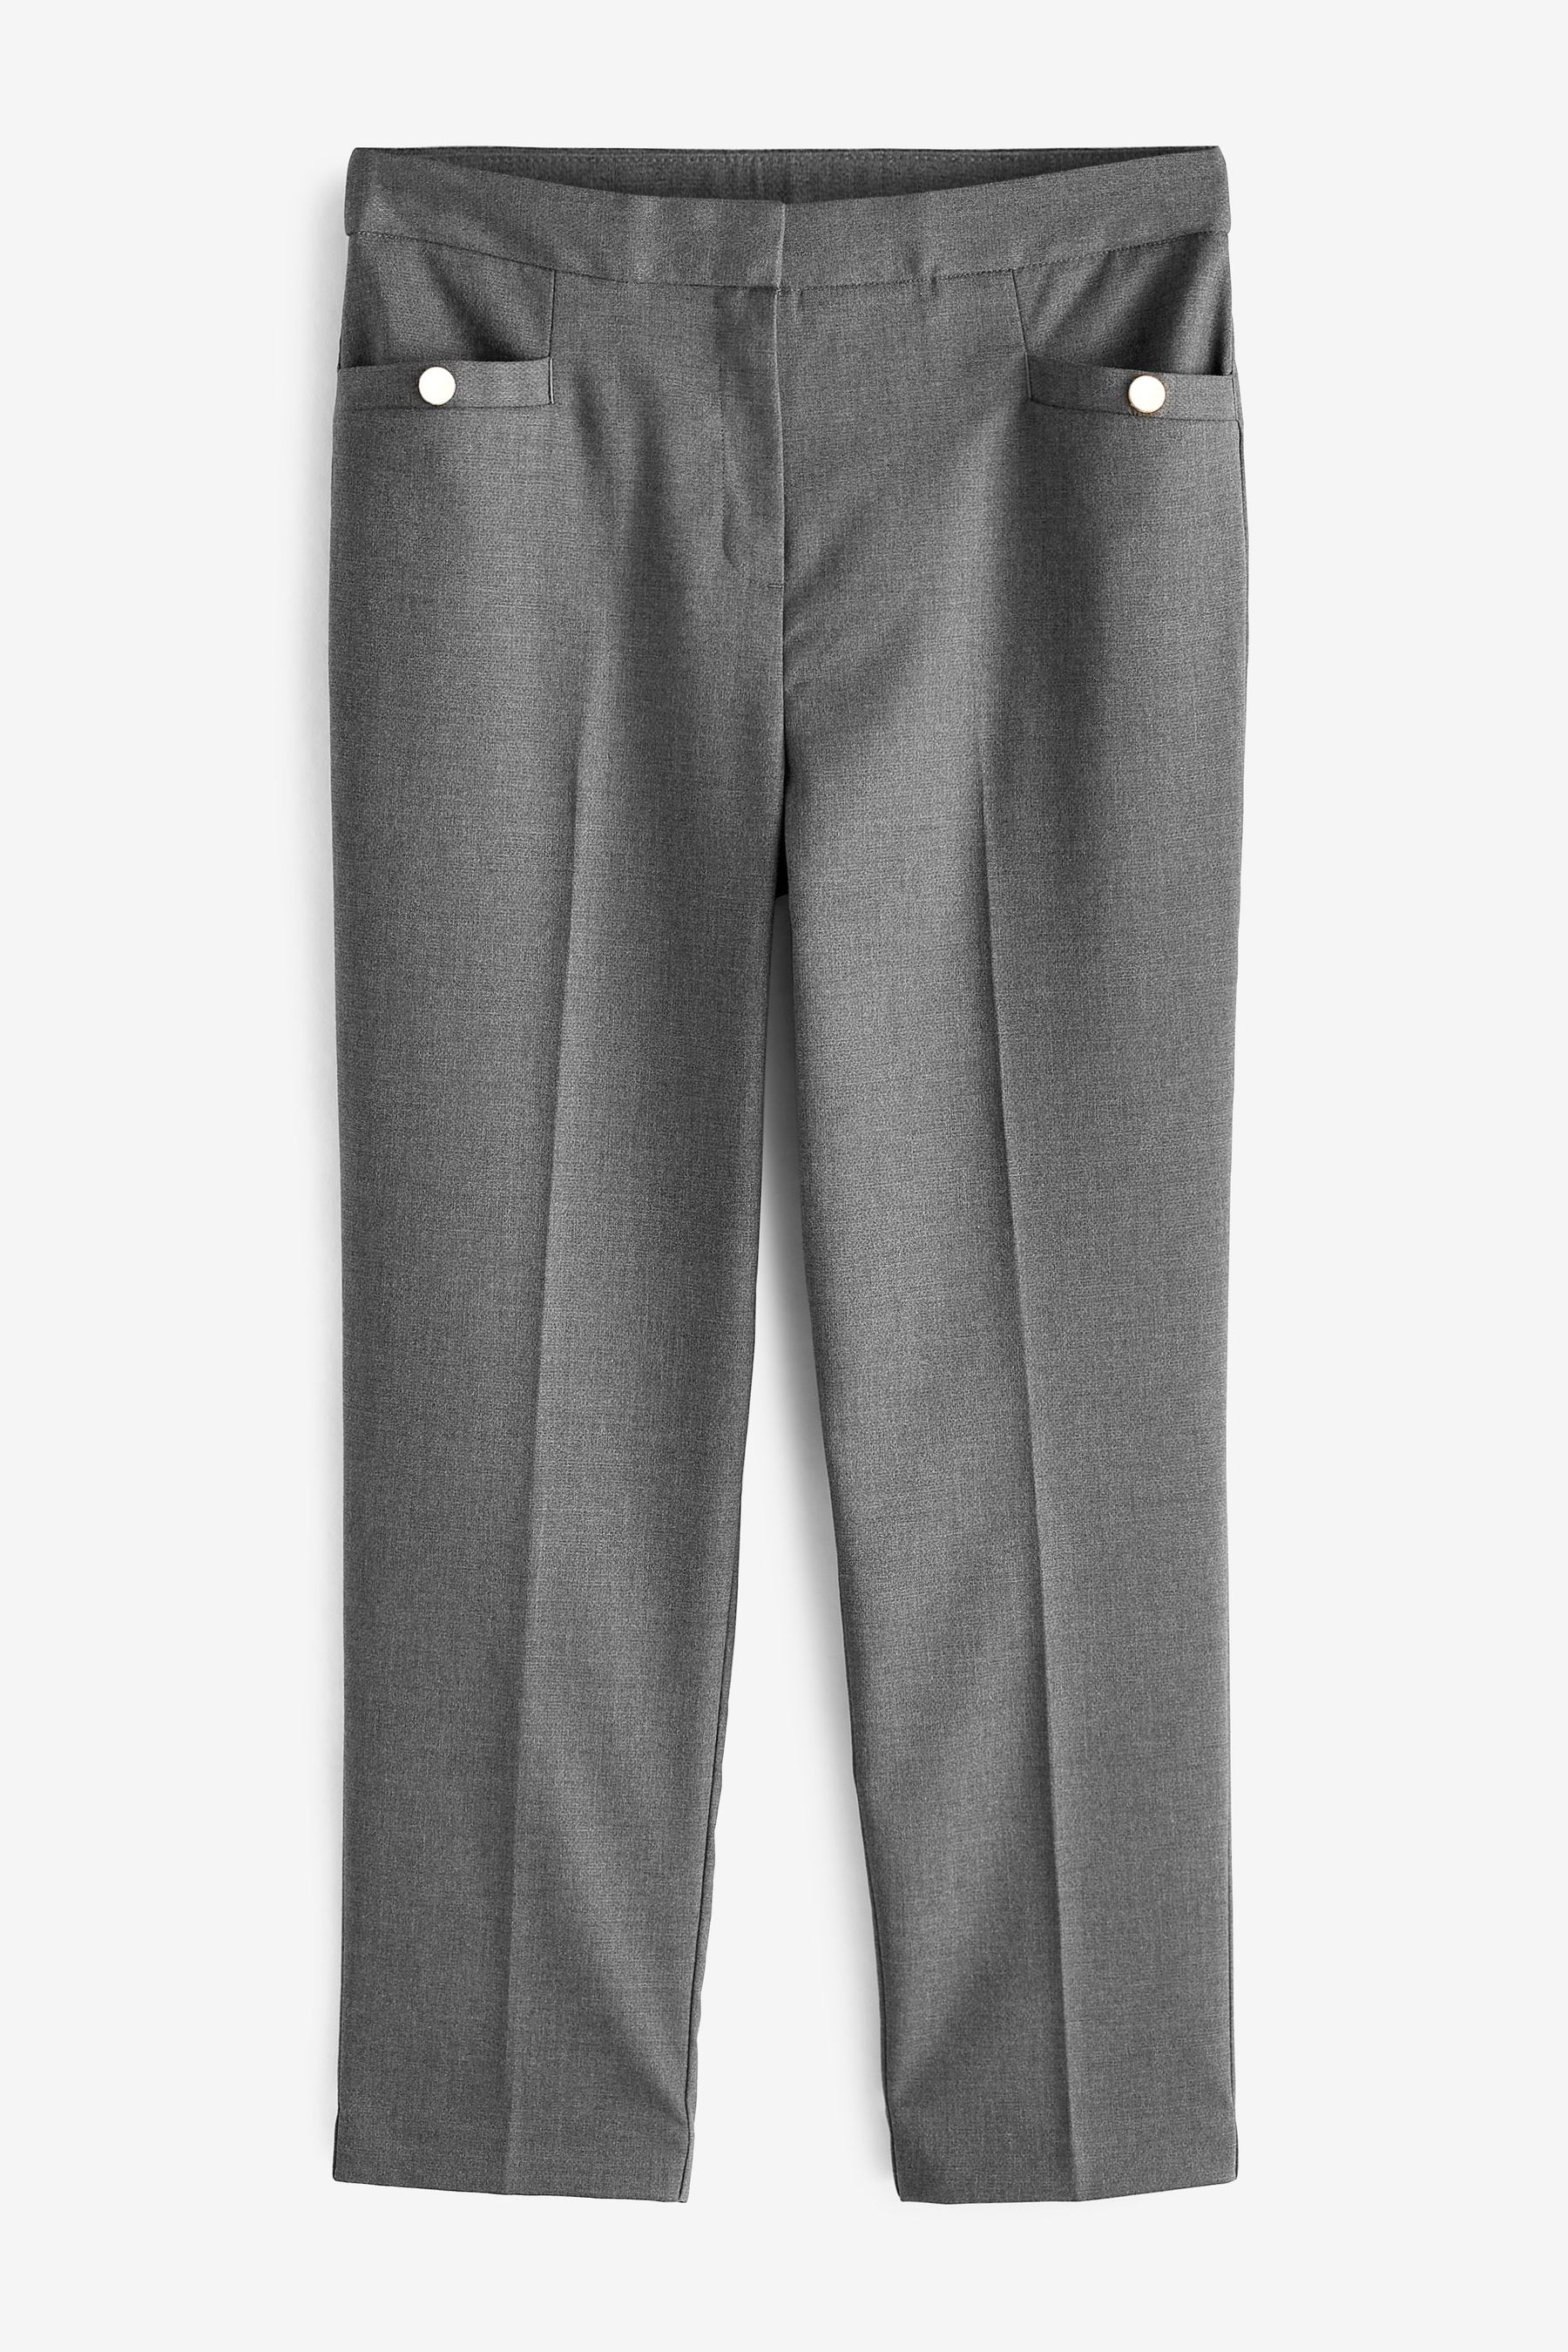 Индивидуальные брюки Next, серый